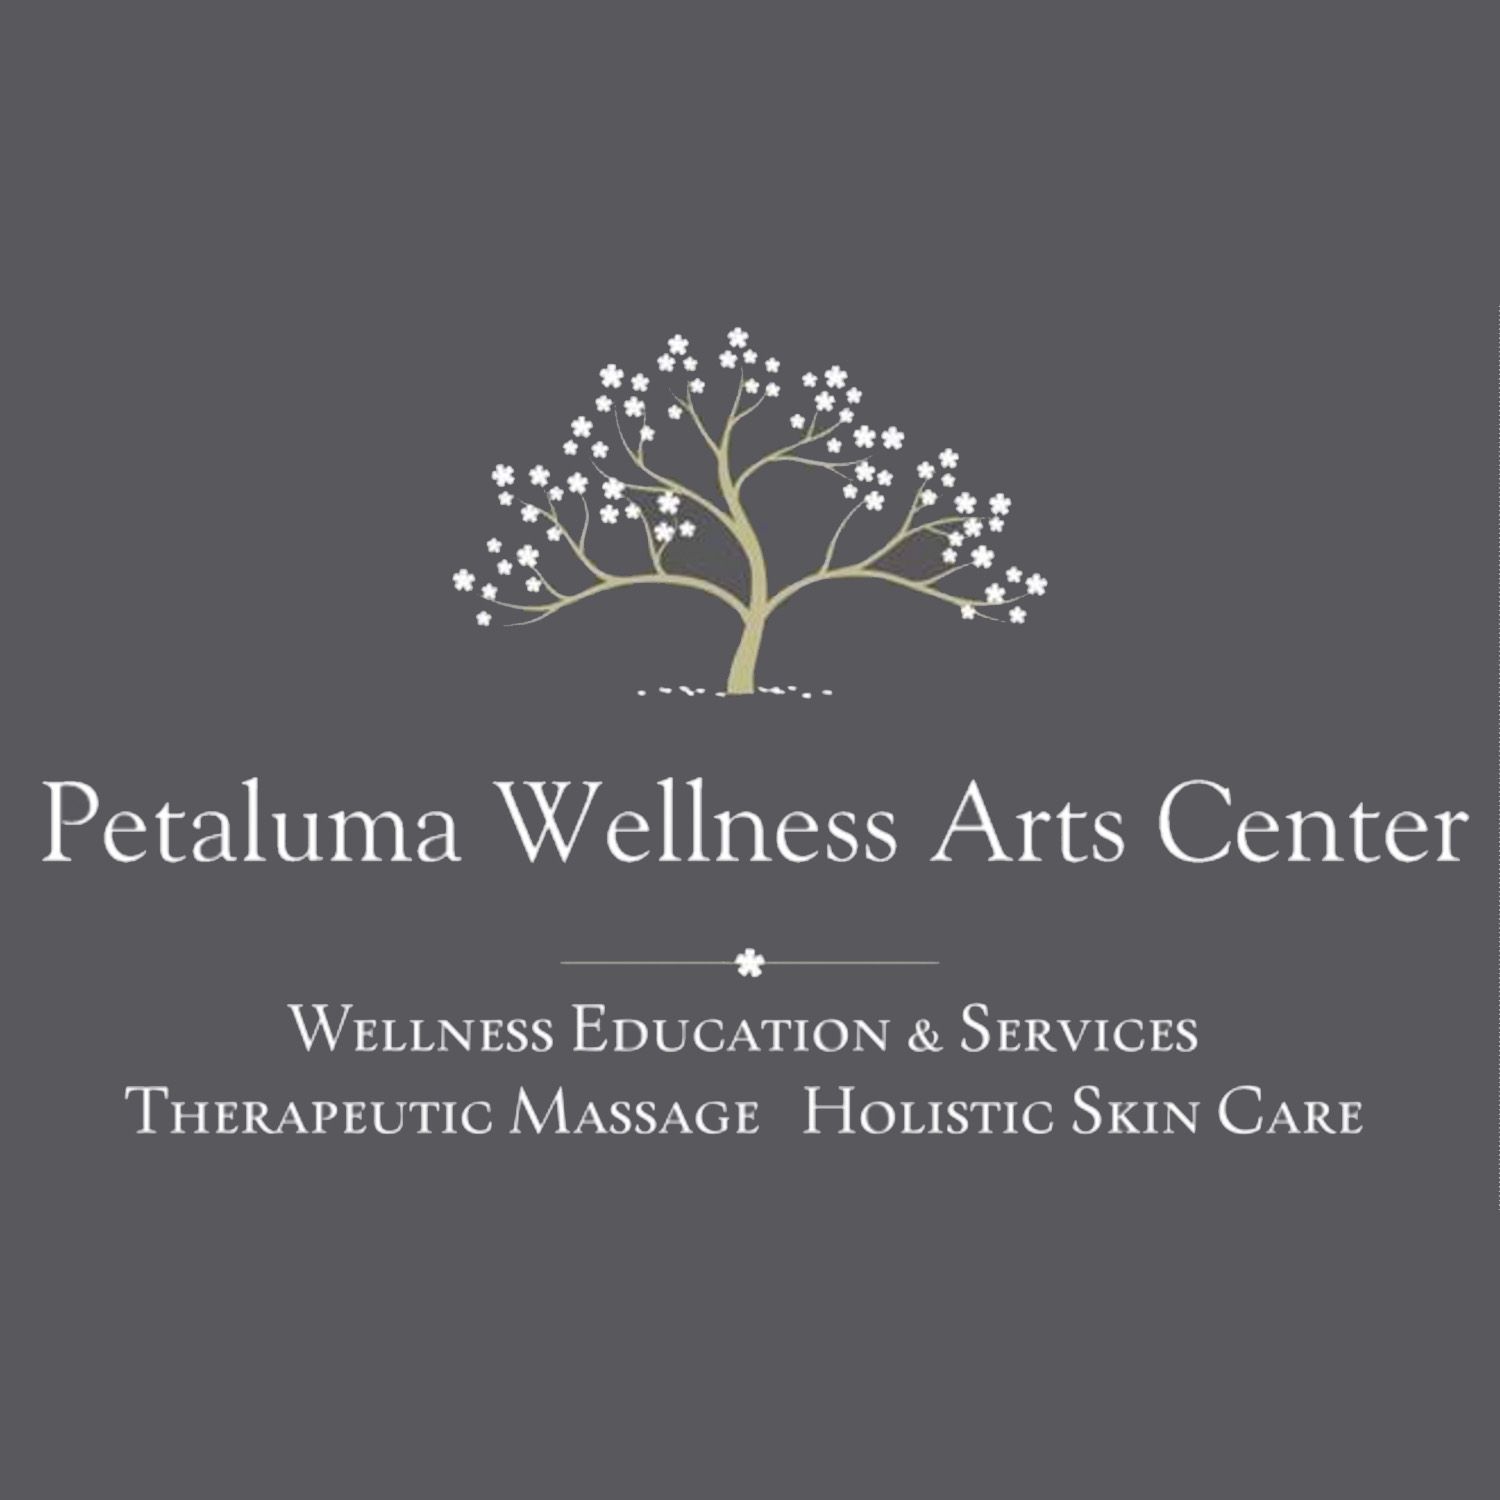 Petaluma Wellness Arts Center, 517 Hayes Ln, Petaluma, 94952